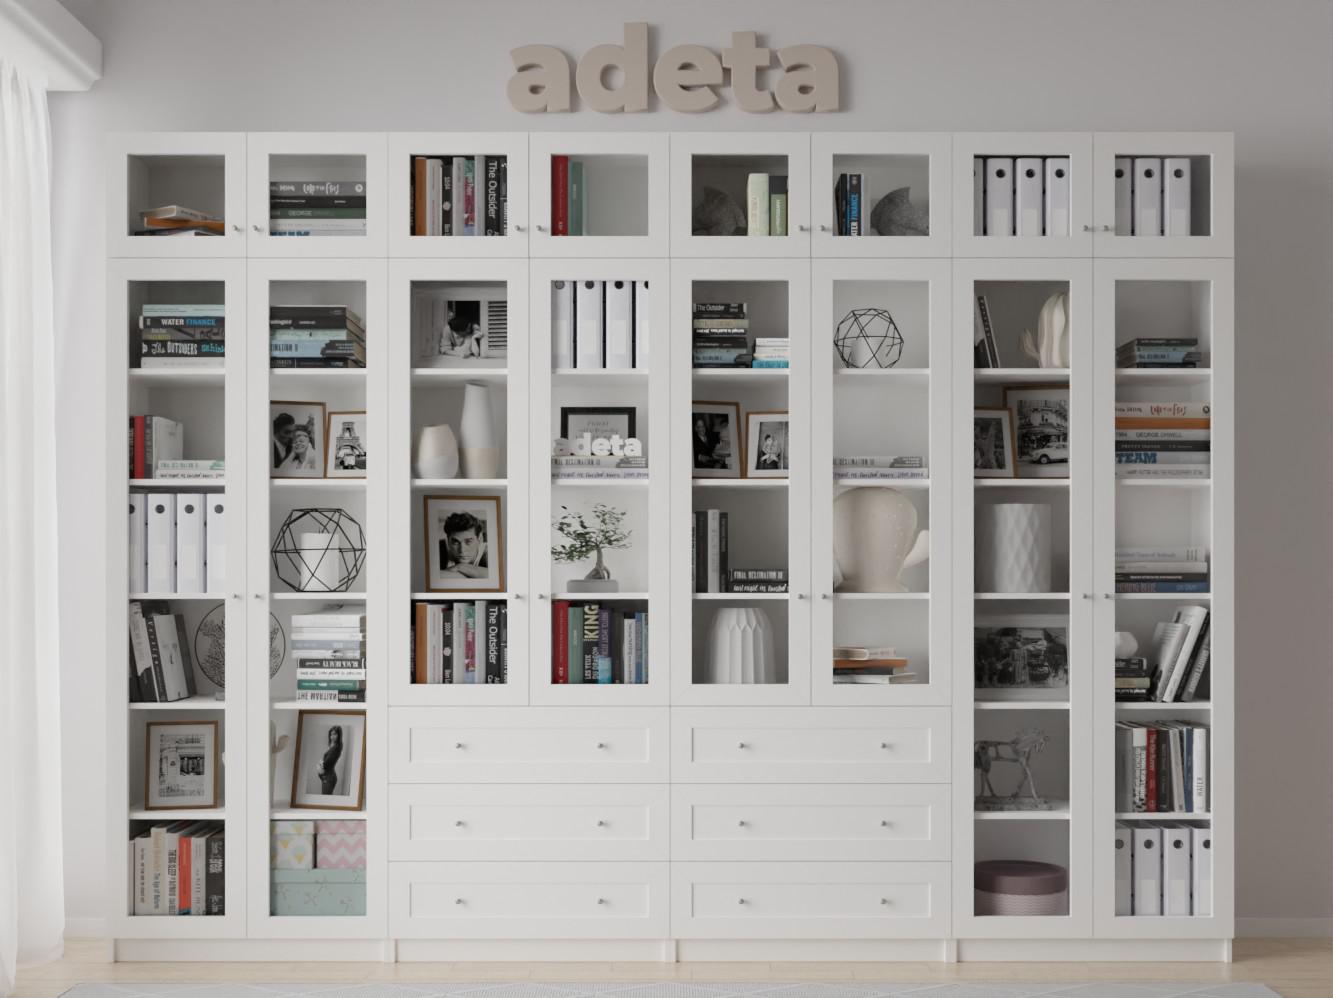 Изображение товара Книжный шкаф Билли 372 white ИКЕА (IKEA), 320x30x237 см на сайте adeta.ru